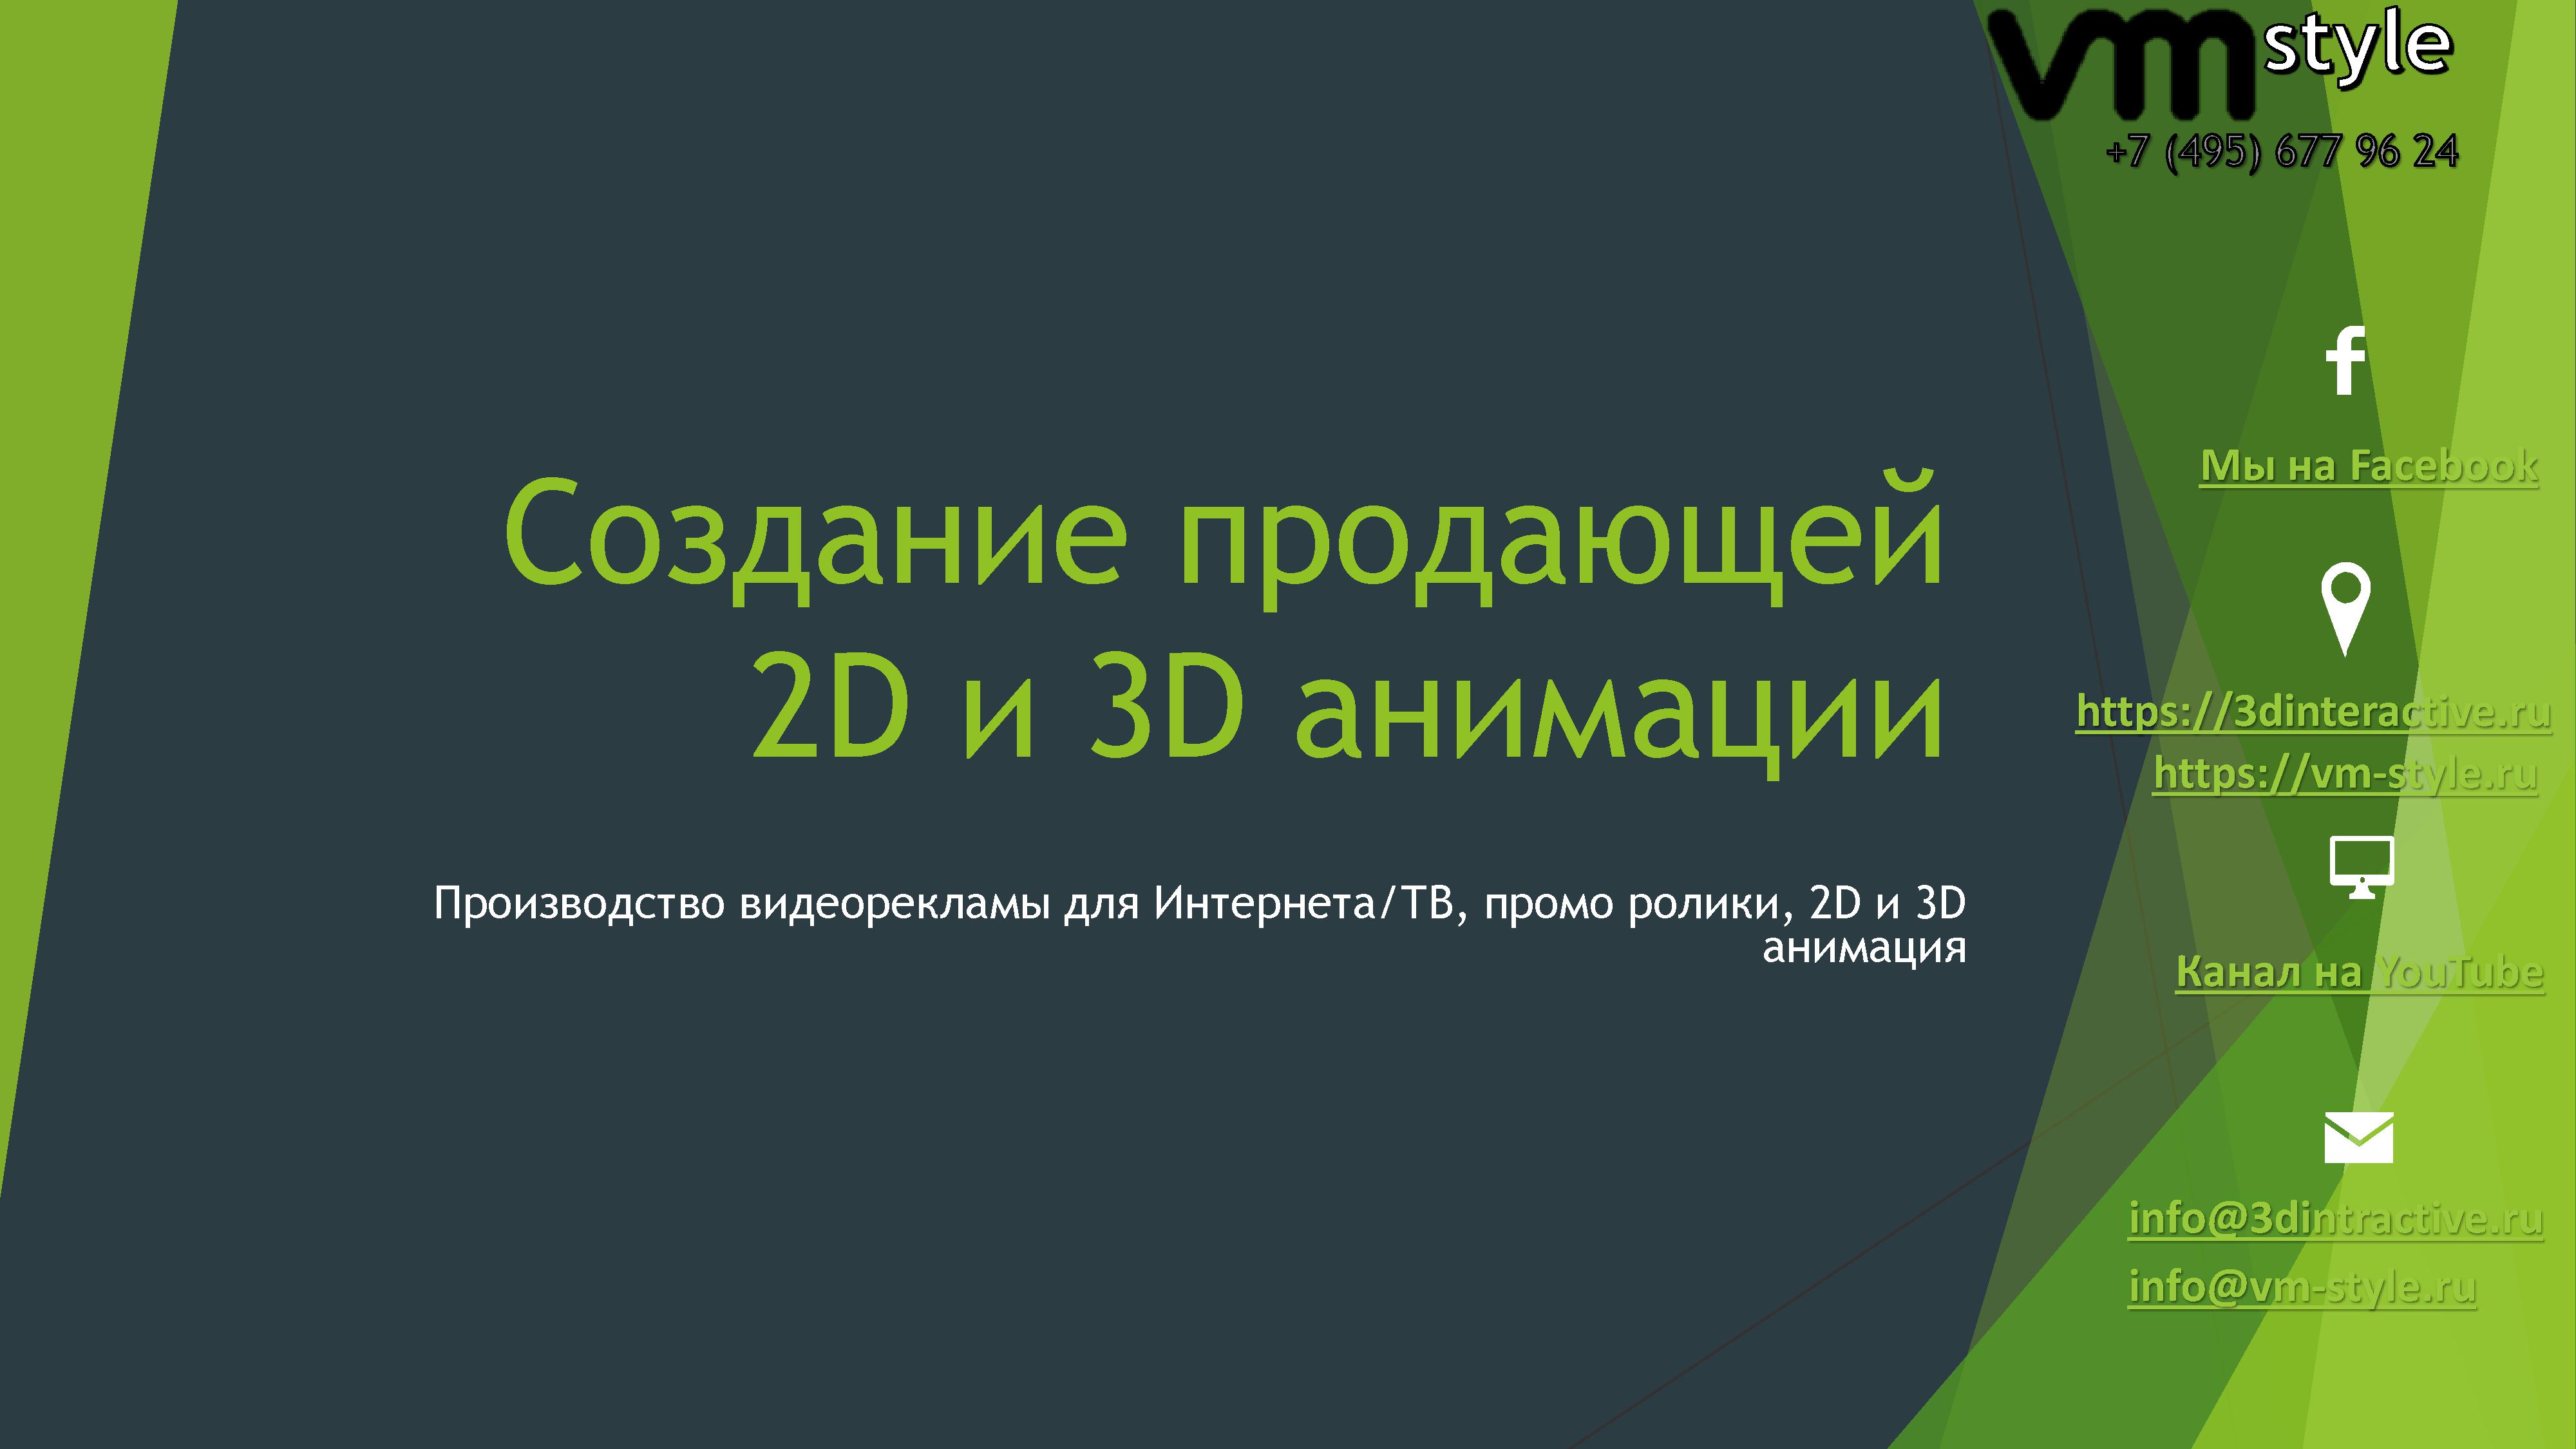 Студия 3D анимации VM style в городе Москва, фото 1, Прочие строительные услуги